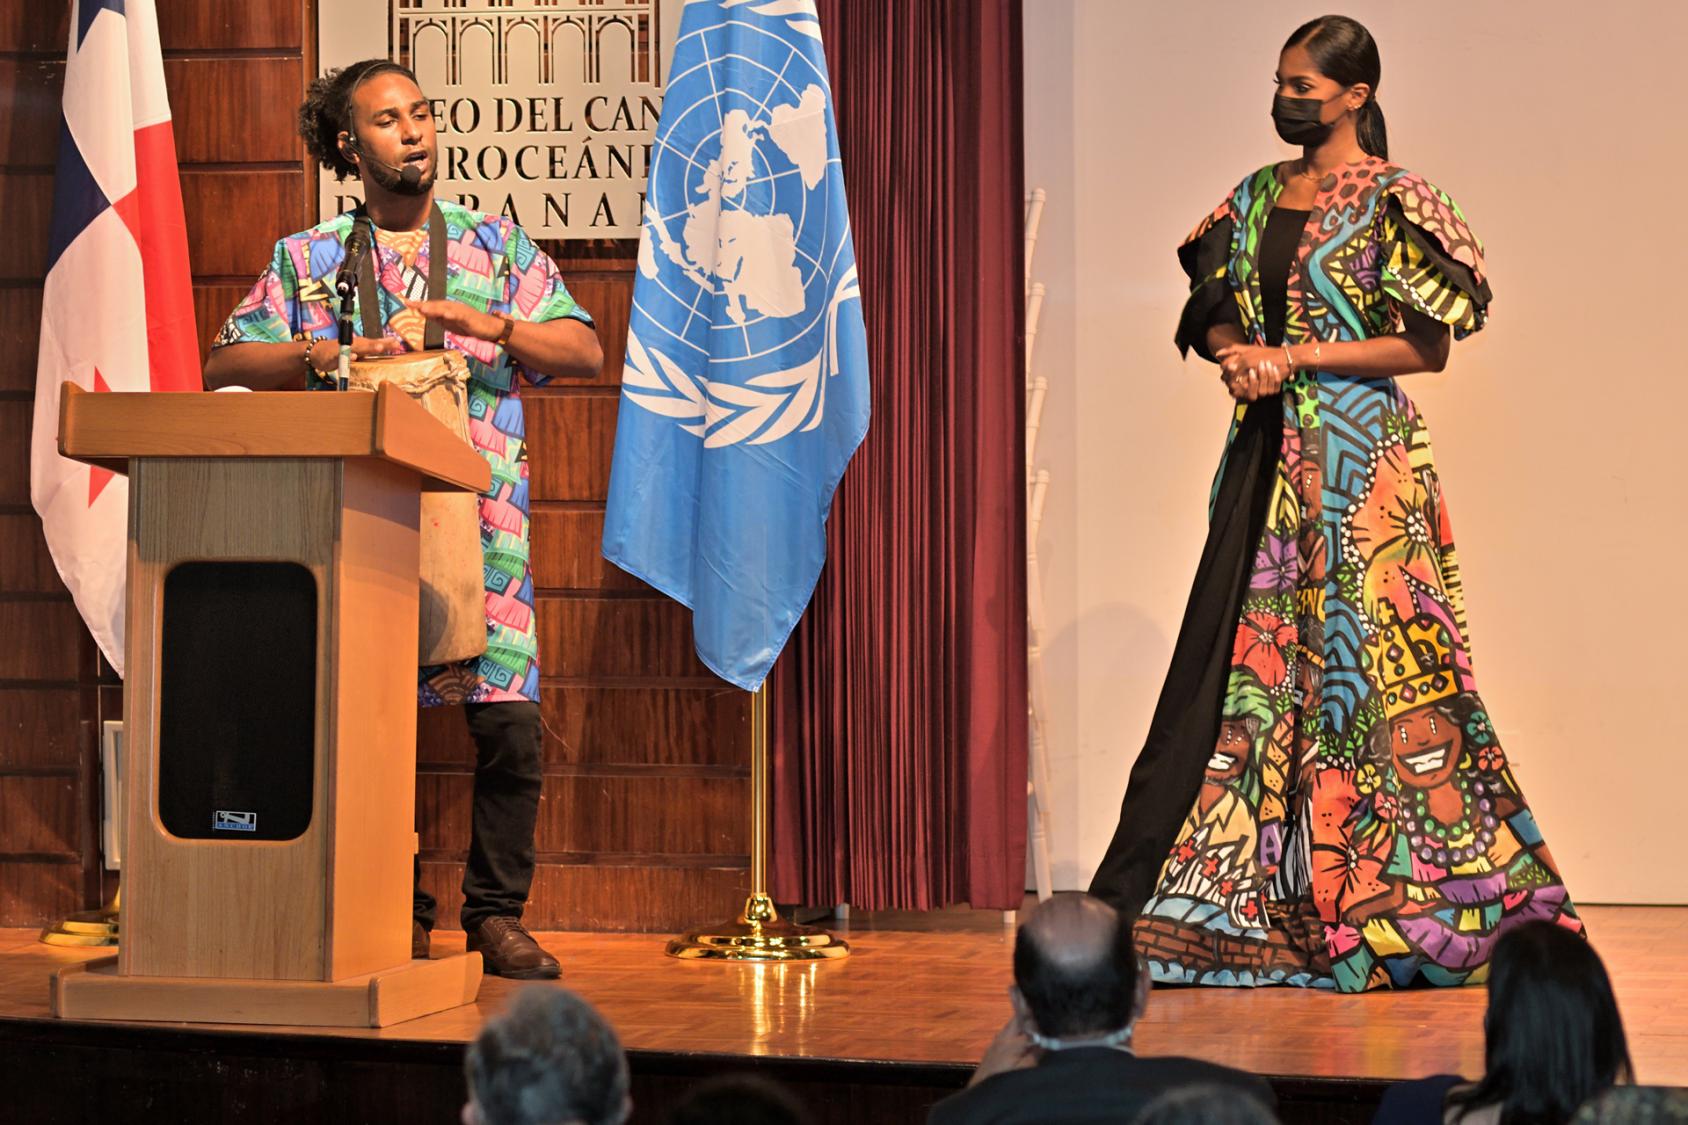 Un hombre y una mujer vestidos con ropas de colores están de pie en el escenario. El hombre canta y toca un tambor ante un micrófono.